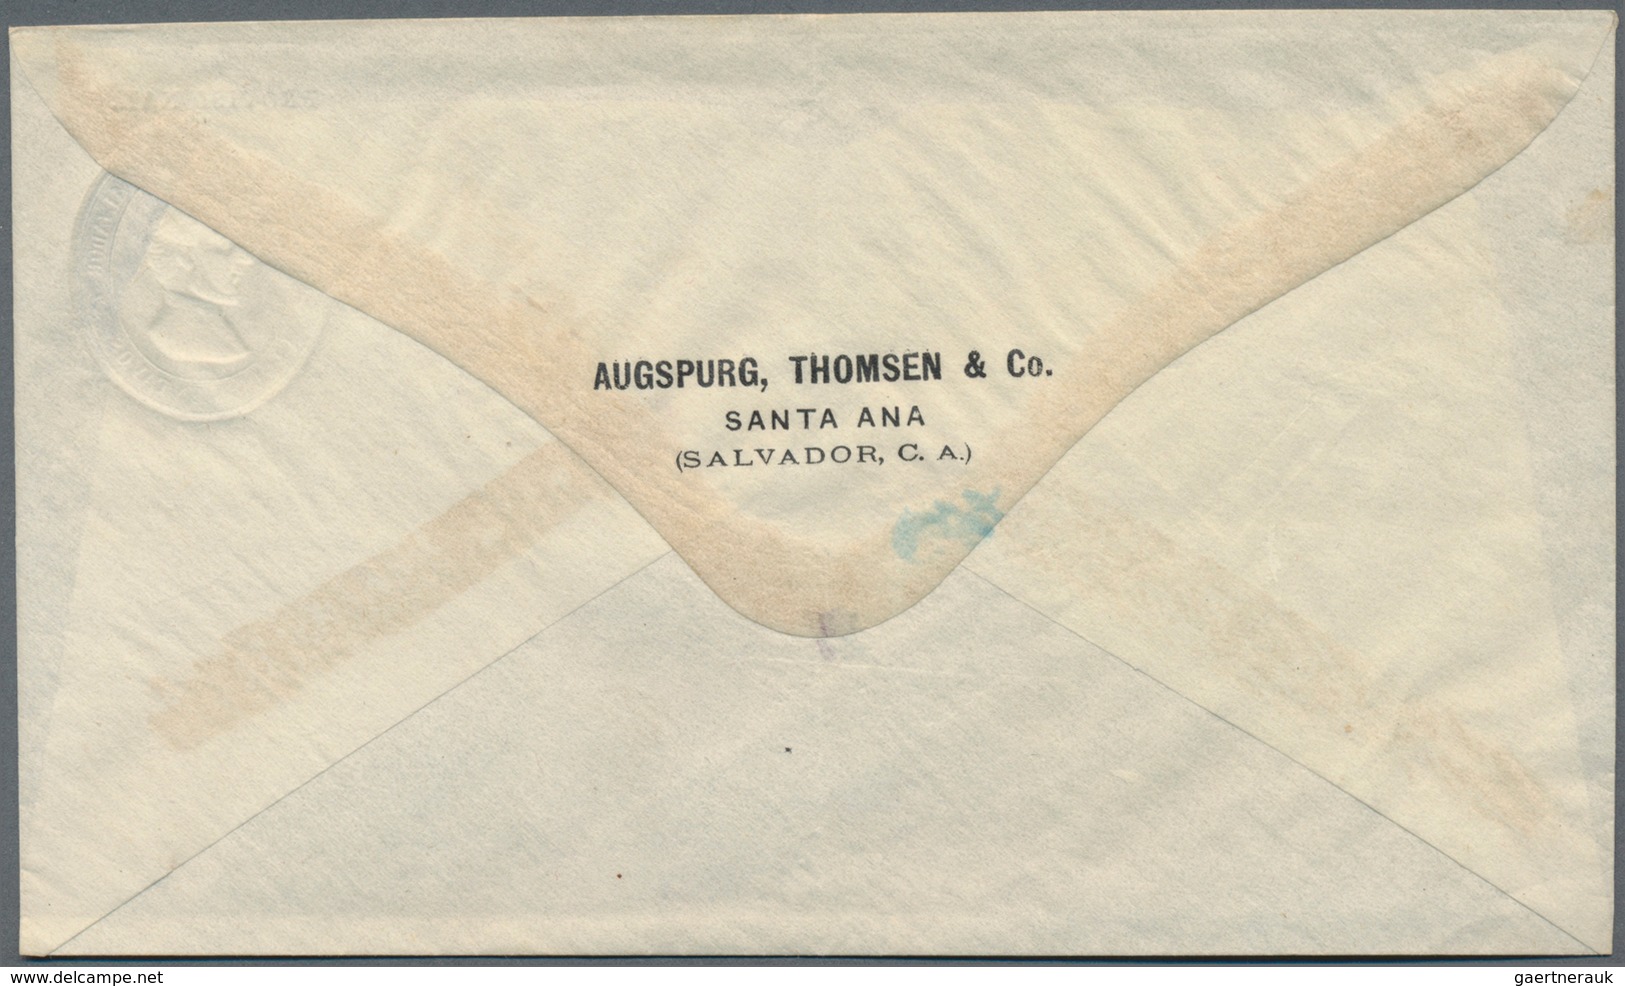 El Salvador - Ganzsachen: 1887, Three Stationery Envelopes On Private Order: Morazan 5 C Blue "PROVI - El Salvador